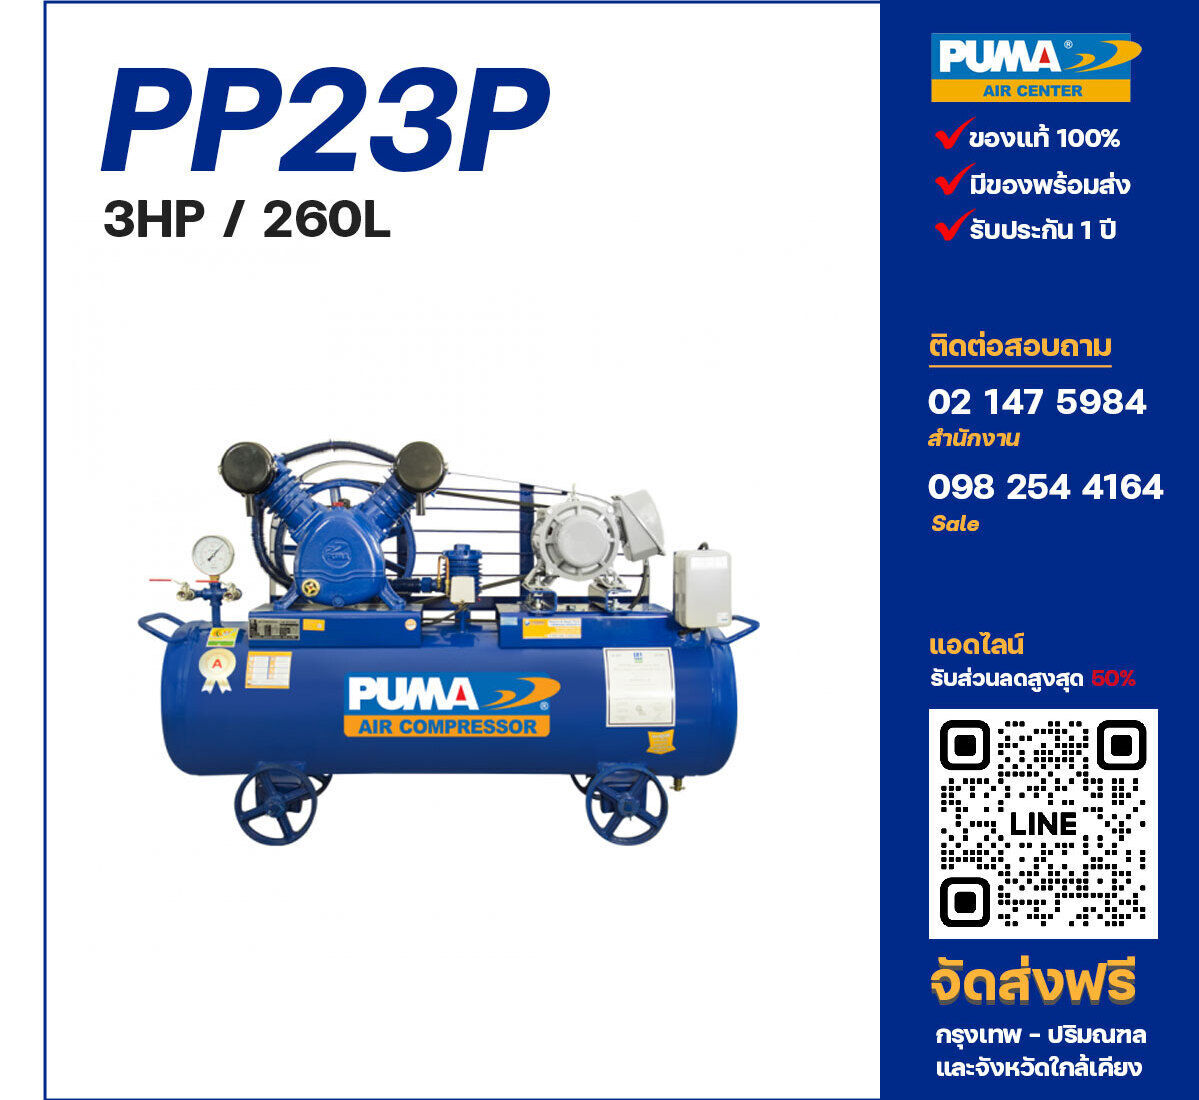 ปั๊มลมพูม่า PUMA PP23P-PPM220V/380V ปั๊มลมลูกสูบ ขนาด 2 สูบ 3 แรงม้า 260 ลิตร PUMA พร้อมมอเตอร์ PUMA ไฟ 220V/380V ส่งฟรี กรุงเทพฯ-ปริมณฑล รับประกัน 1 ปี